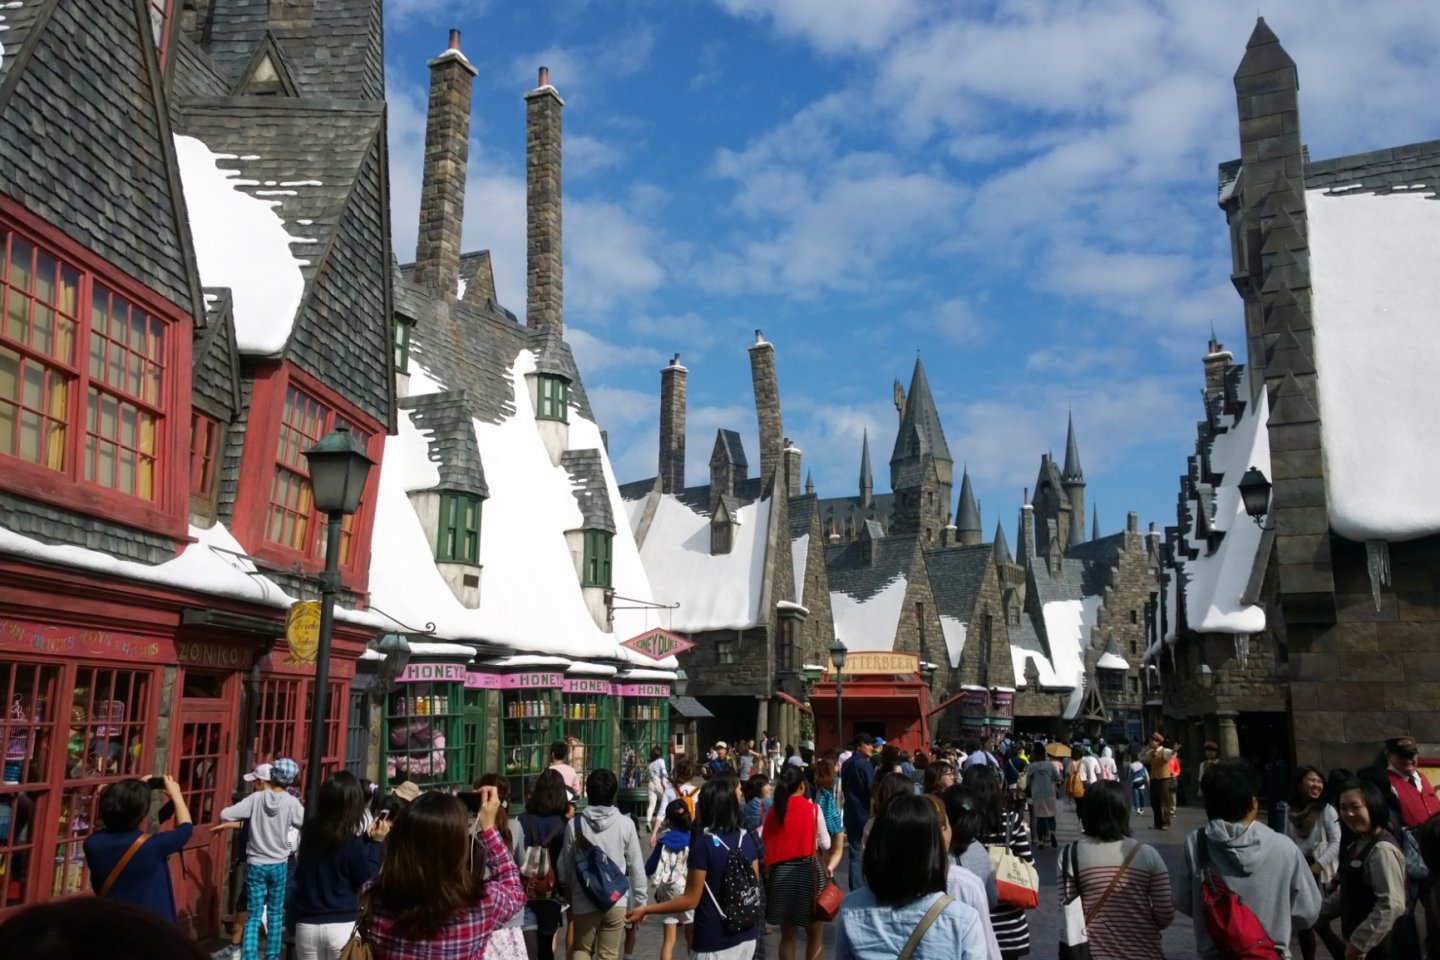 The Wizarding World of Harry Potter : ผู้คนมากมายกำลังสนุกสนานอยู่ในบริเวณหมู่บ้าน HOGSMEADE VILLAGE ที่ถอดแบบจินตนาการเมืองแห่งเวทมนตร์มาจากบทประพันธ์และภาพยนตร์ให้เราสัมผัสได้จริง หมู่บ้านแห่งนี้เป็นด่านแรกที่จะต้อนรับเราสู่ The Wizarding World of Harry Potter อาคารต่างๆ นั้นดูผิดส่วนแปลกตาสวยงามอย่างน่าอัศจรรย์ ตลอดถนนกลางหมู่บ้านนั้นมีร้านรวงที่น่าสนใจมากมายที่ราวรุดมาจากมหากาพย์ชื่อดังแห่งยุคนี้เลยทีเดียว อาทิ ร้านขนมหวาน HONEYDUKES, ร้านไปรษณีย์นกฮูก OWL POST & OWLERY, ร้านไม้กายสิทธิ์ OLLIVANDERS เป็นต้น